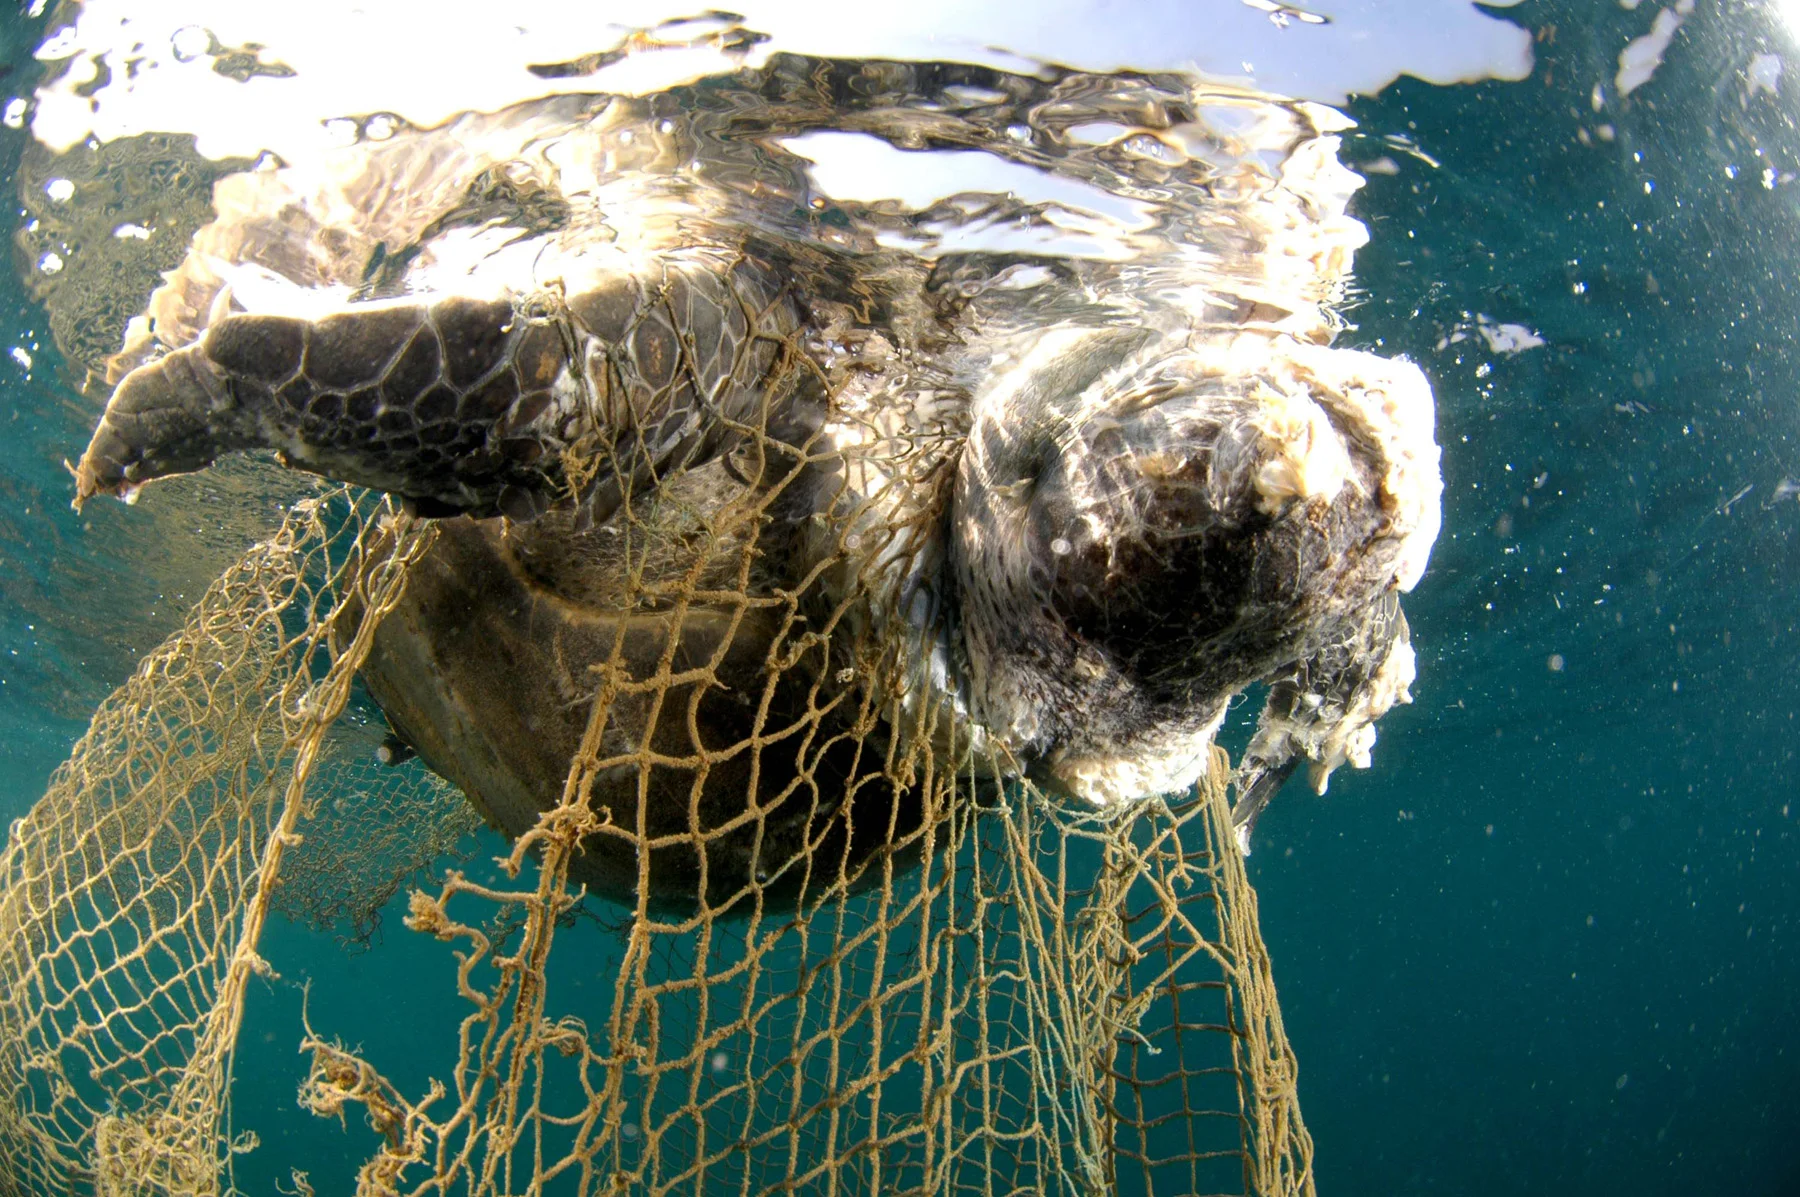 Le reti da pesca abbandonate sono una minaccia per il Mediterraneo